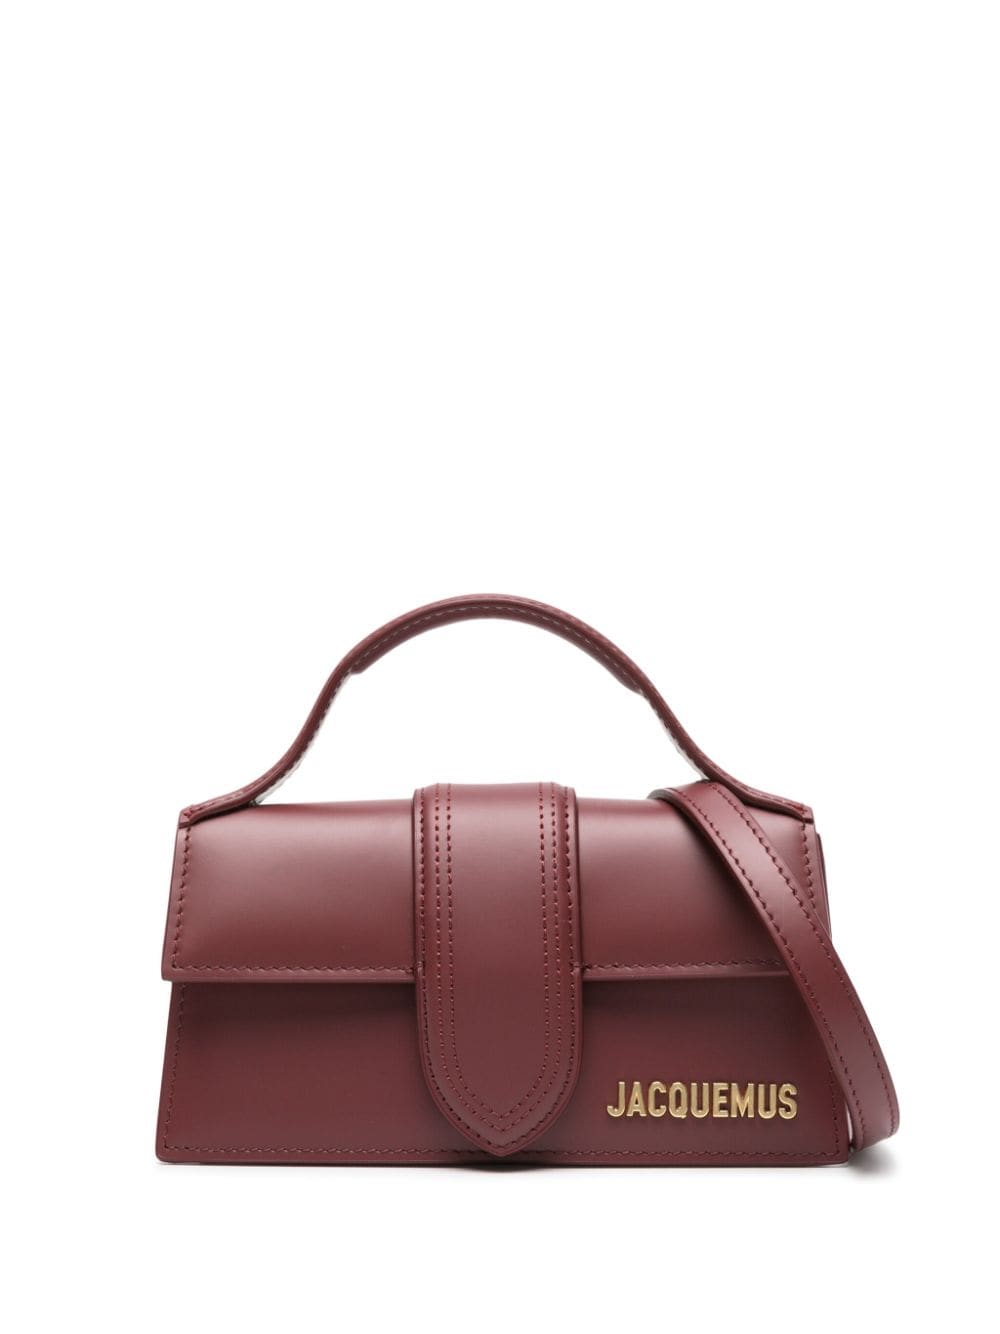 Jacquemus Le Bambino leather mini bag - Red von Jacquemus